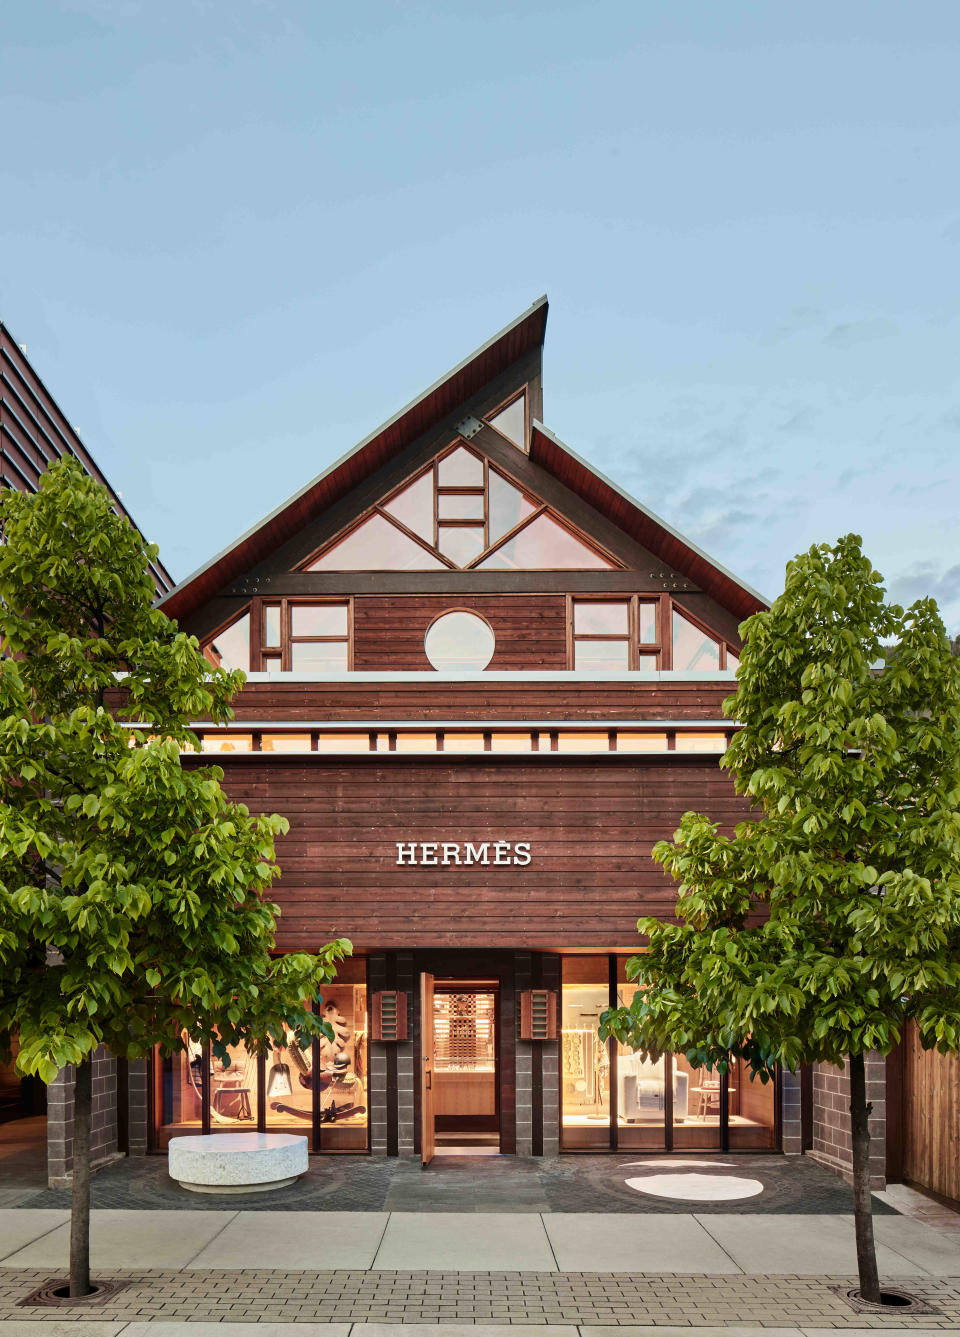 The Hermes store in Aspen.